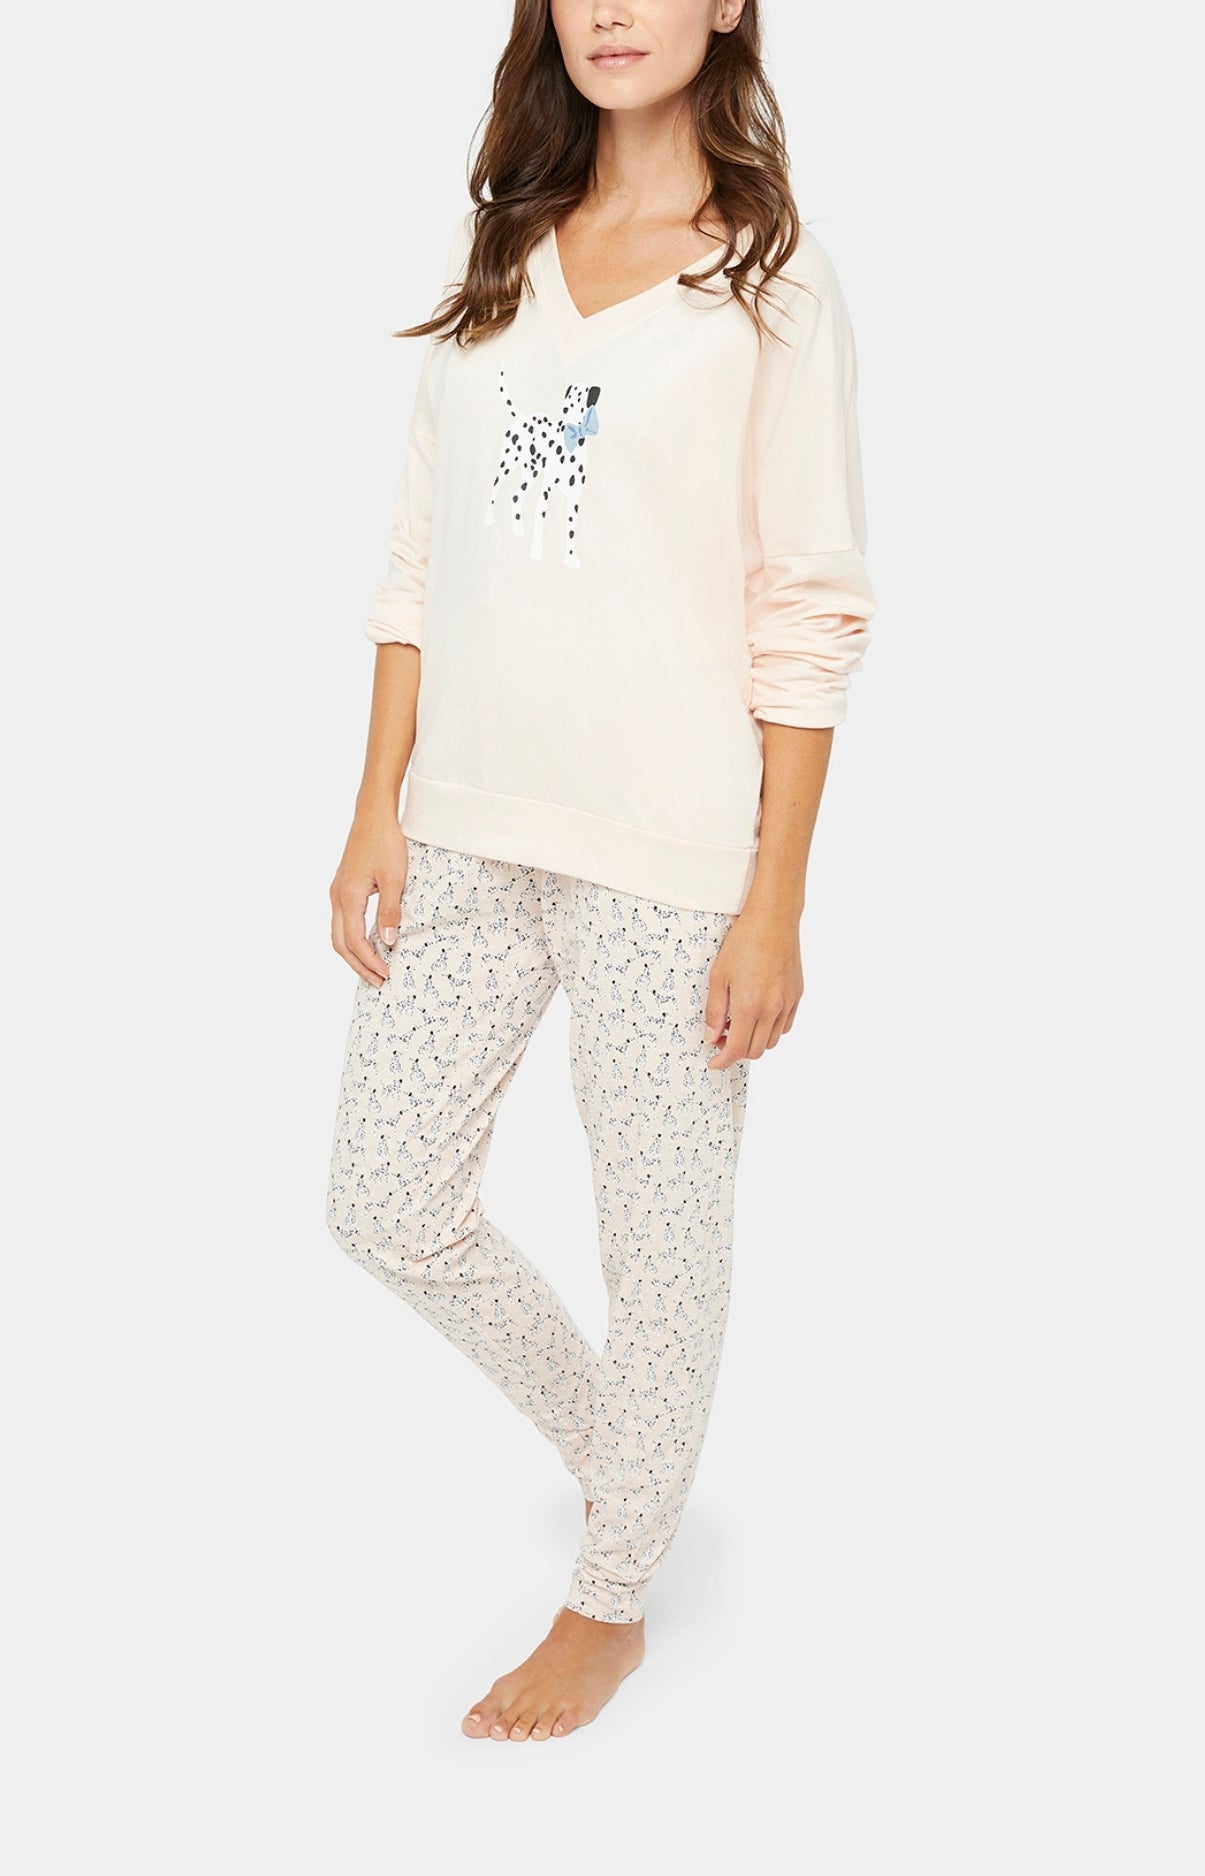 Pyjama Beige - Dalmatian